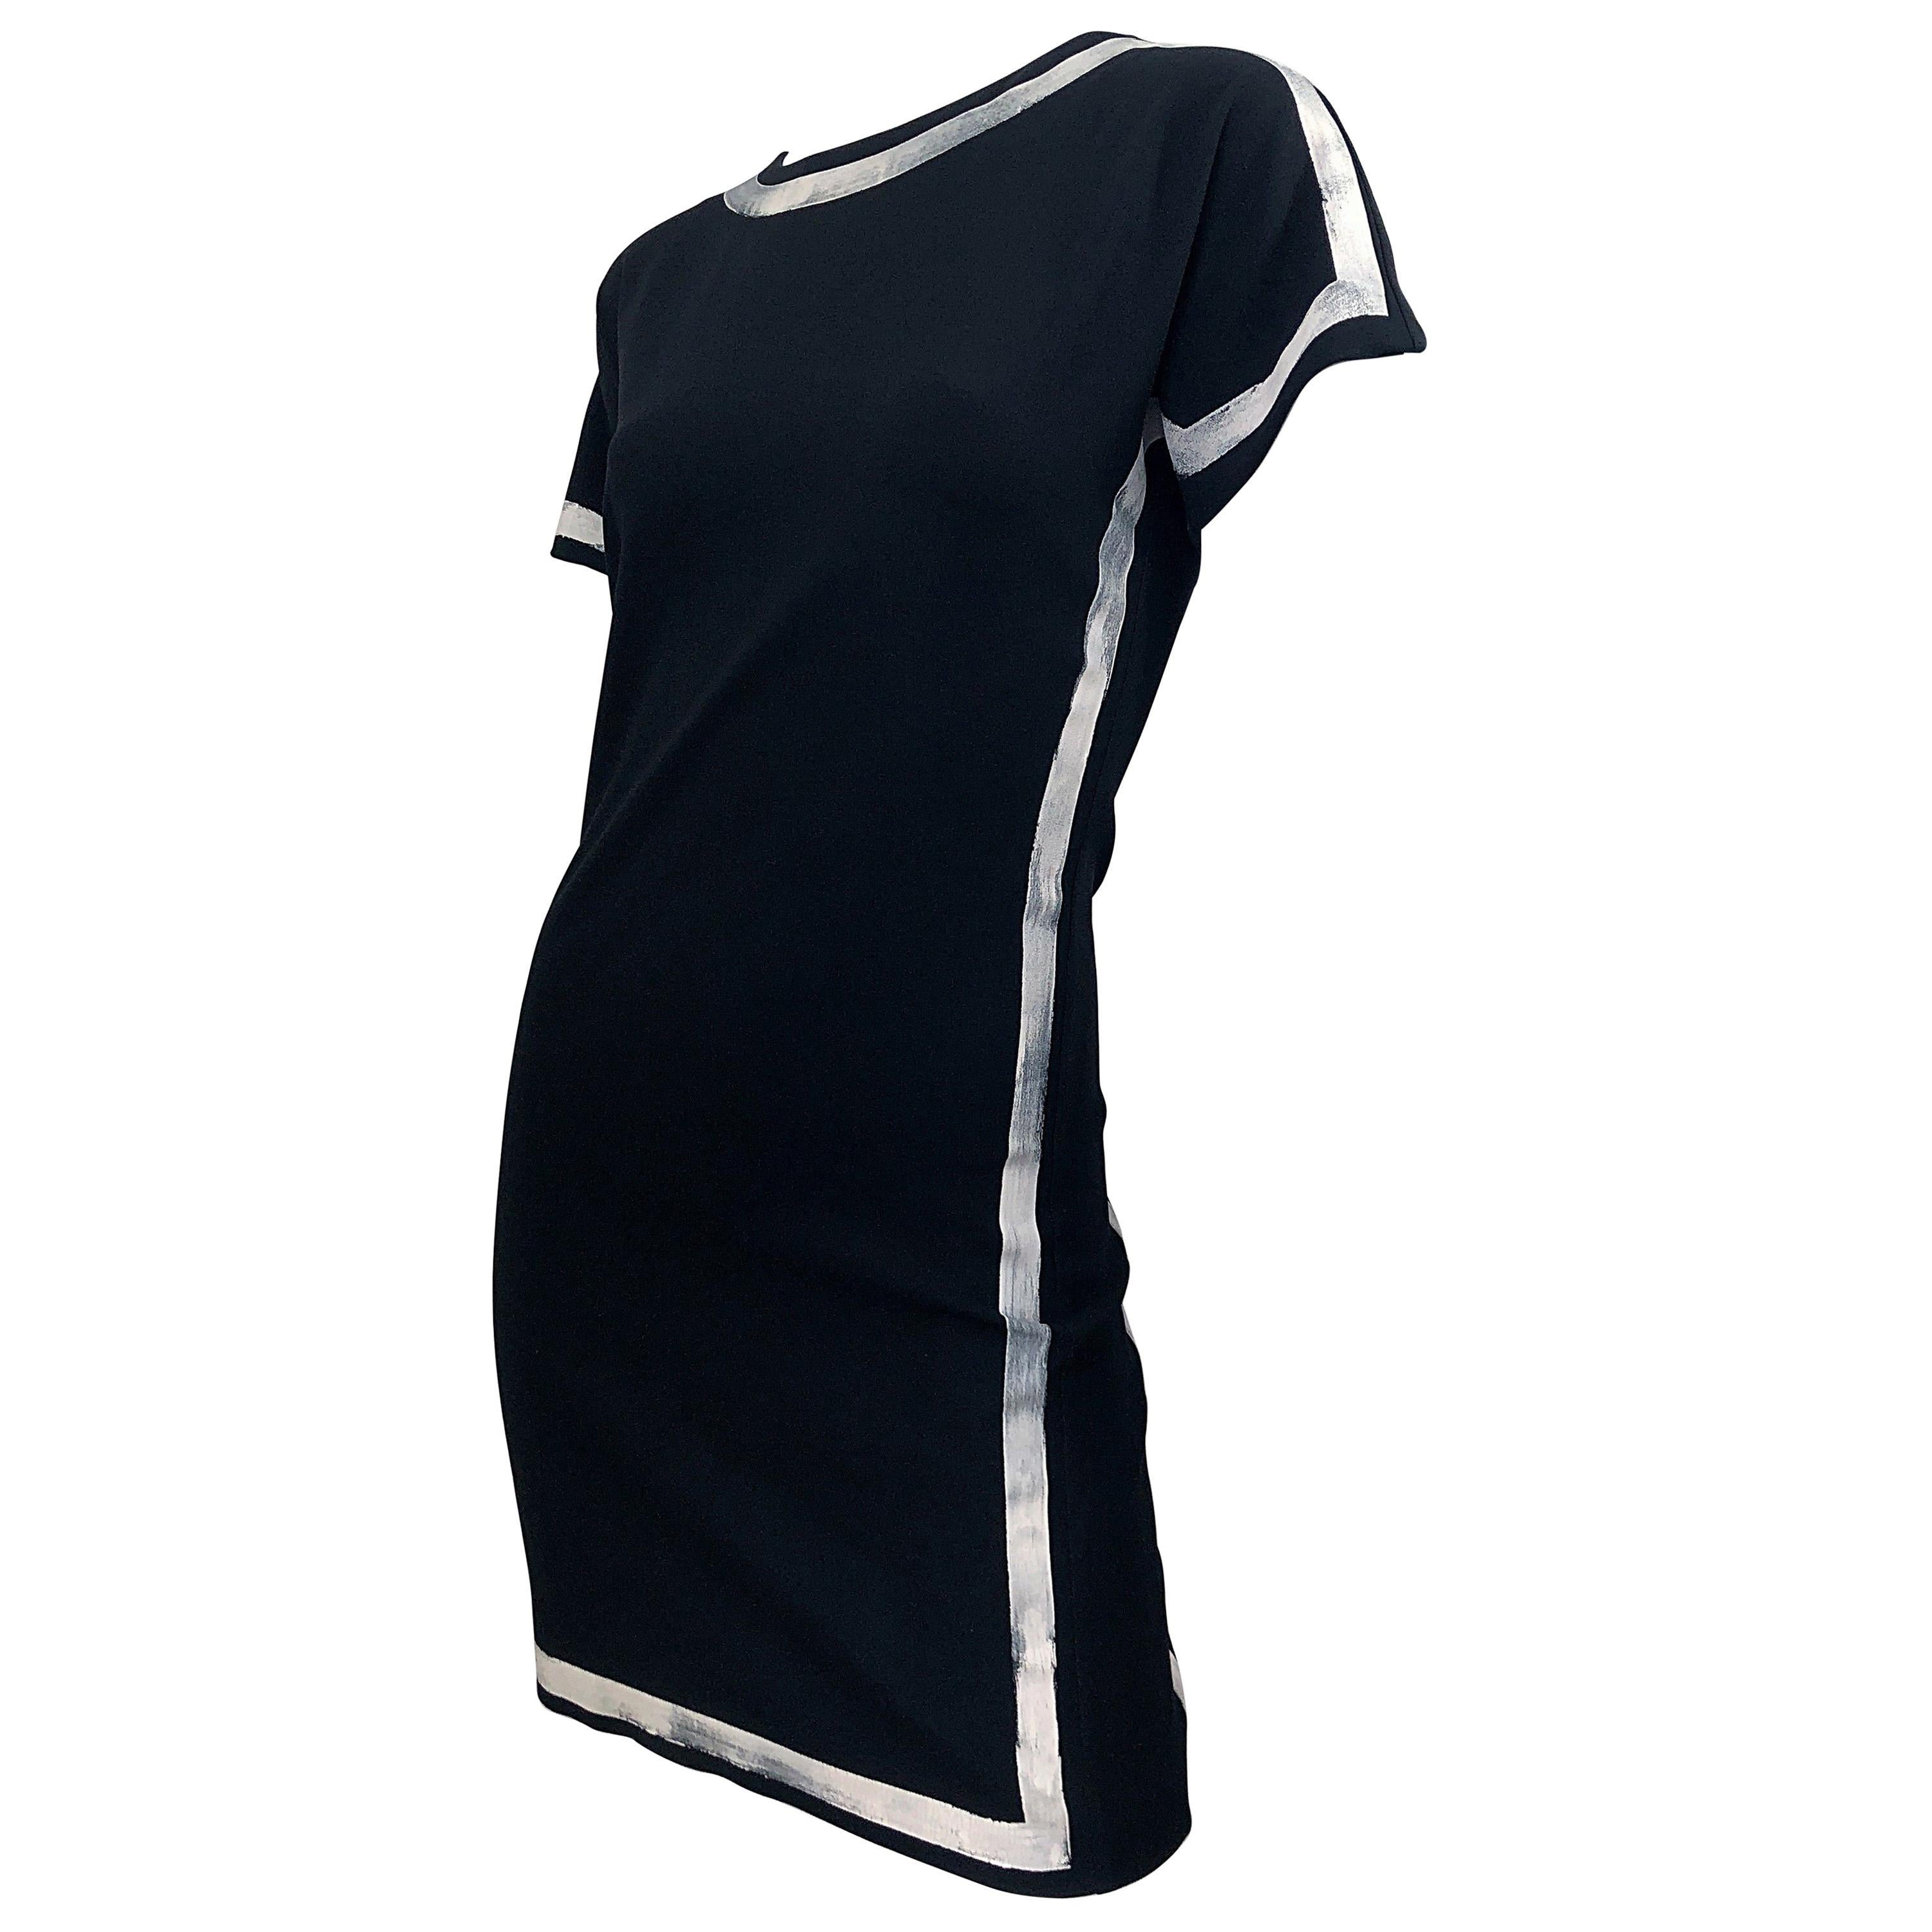 2000er Moschino Cheap & Chic Schwarzes und weißes handbemaltes Vintage-Kleid in Schwarz und Weiß Größe 6 8, handbemalt